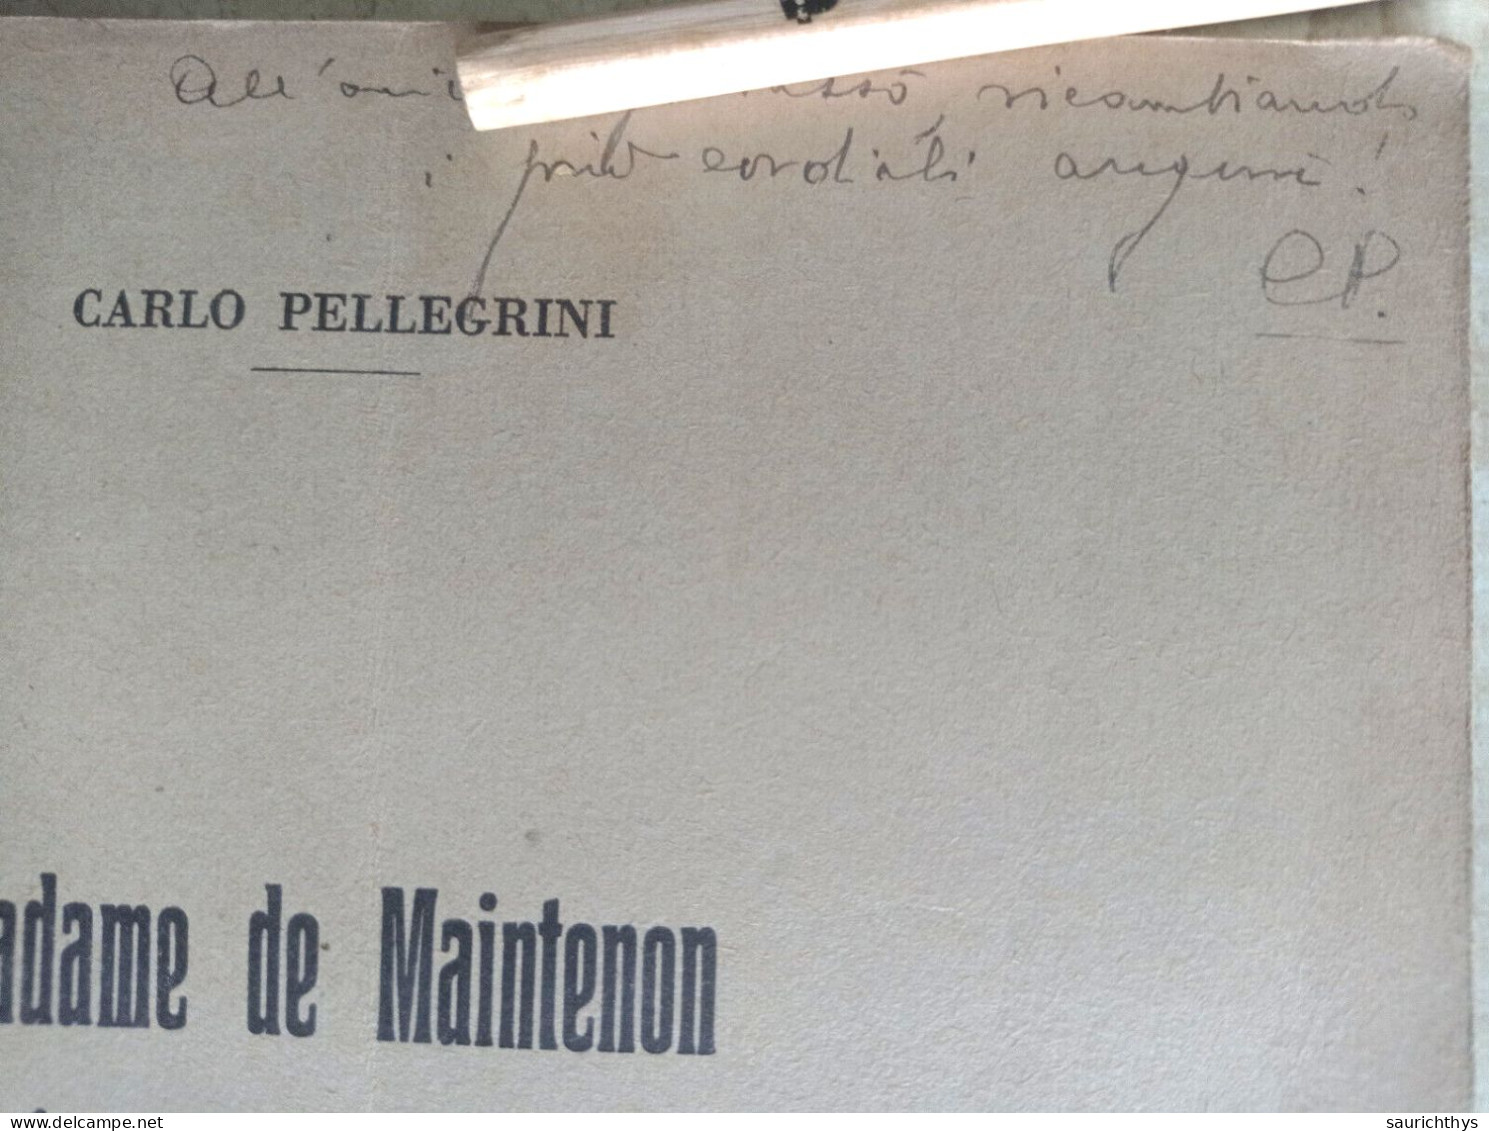 Madame De Maintenon Ed Uno Scrittore Italiano Del Seicento Autografo Carlo Pellegrini Da Viareggio - Histoire, Biographie, Philosophie